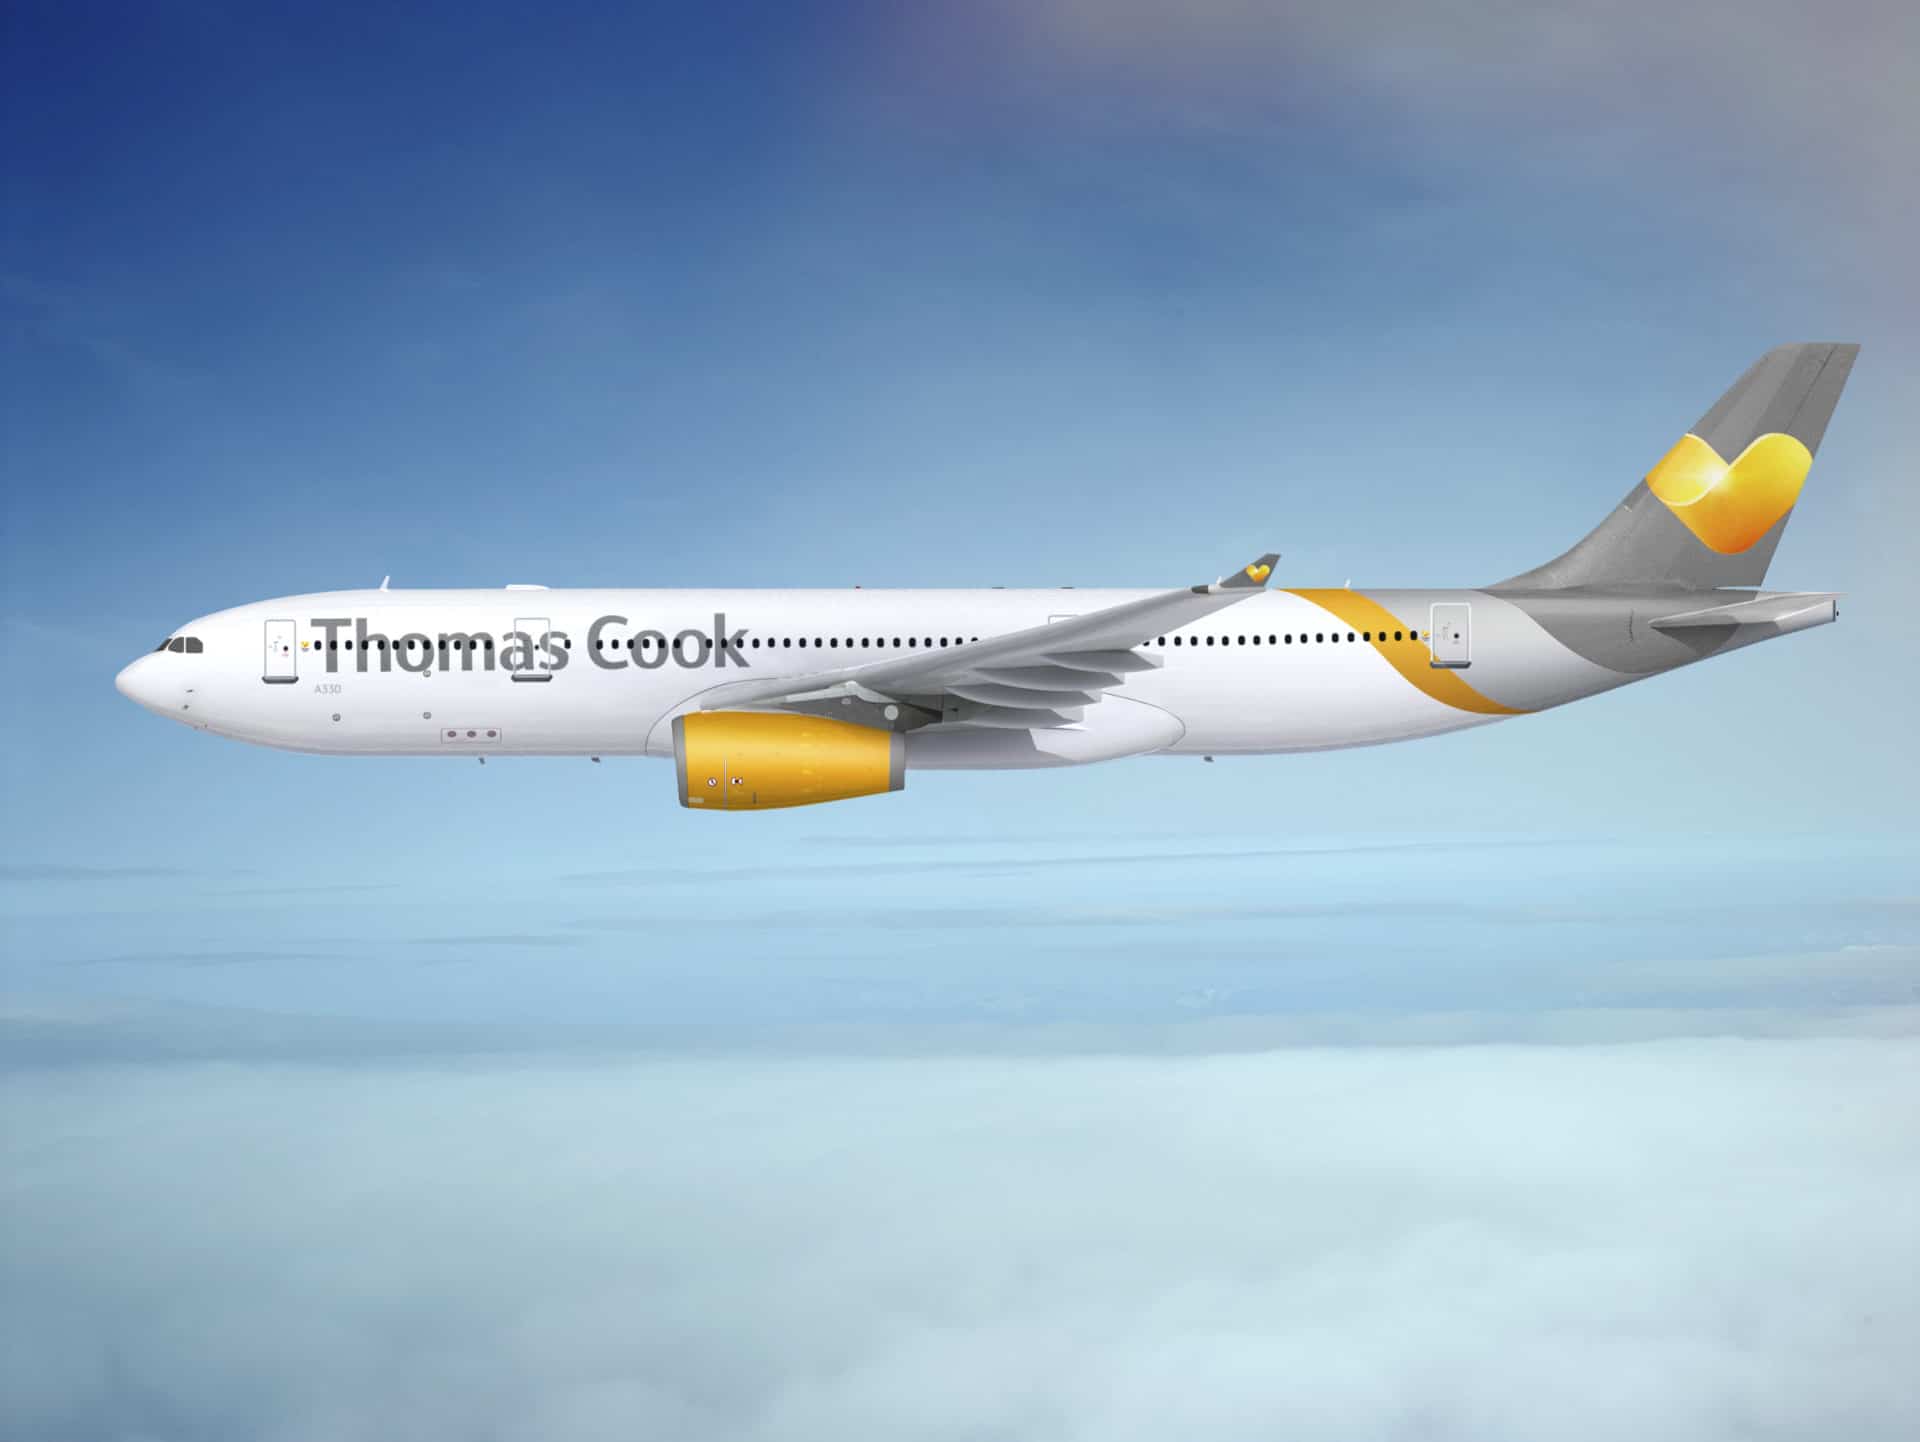 Thomas Cook A330 200